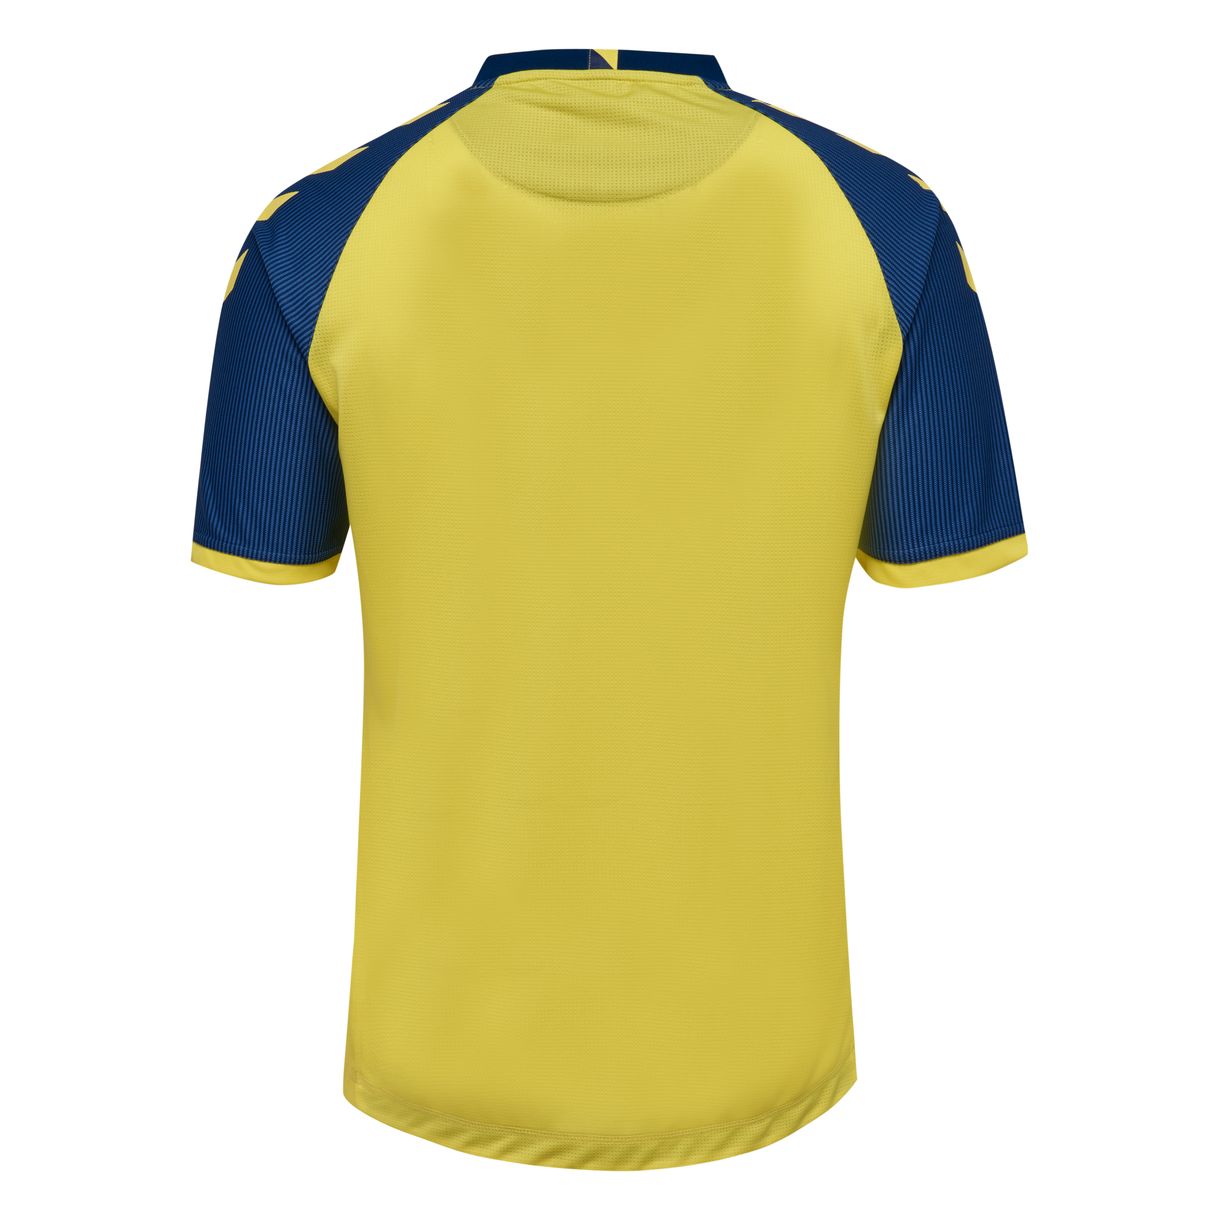 Brøndby 17/18 Hummel Home Kit | 17/18 Kits | Football shirt blog